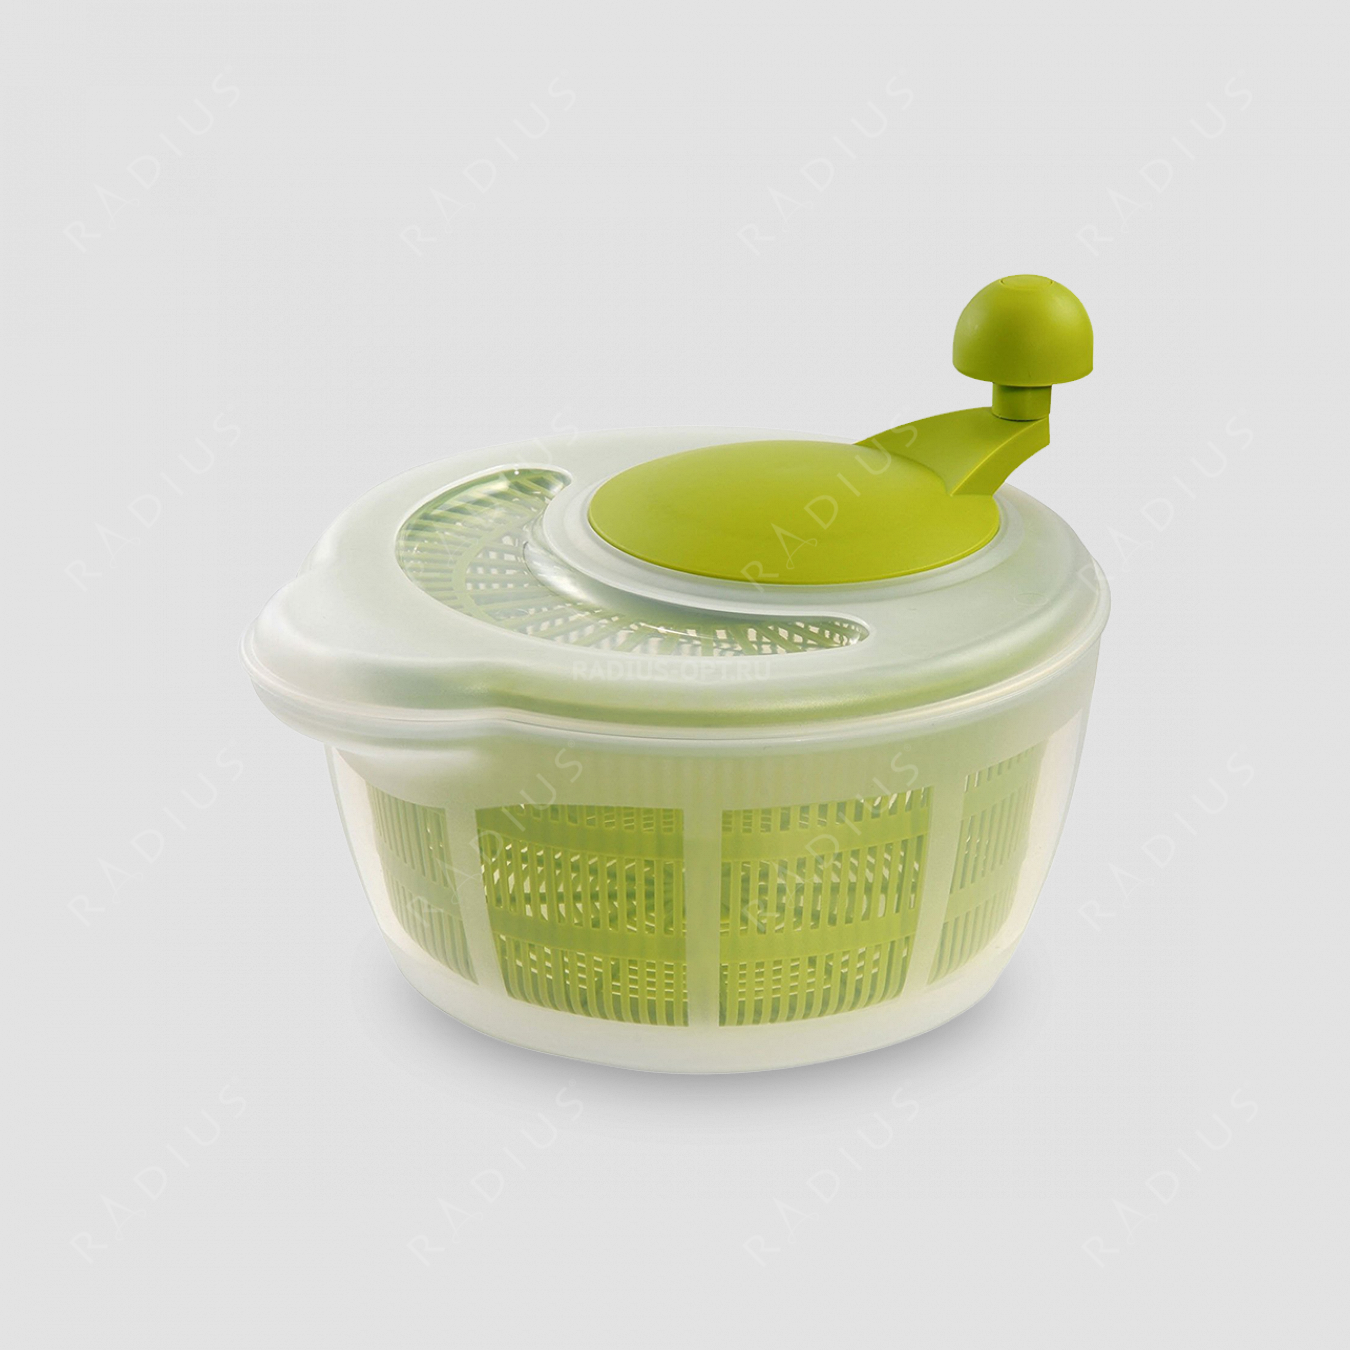 Сушка для салатных листьев, пластик, цвет зеленый, серия Plastic tools, Westmark, Германия